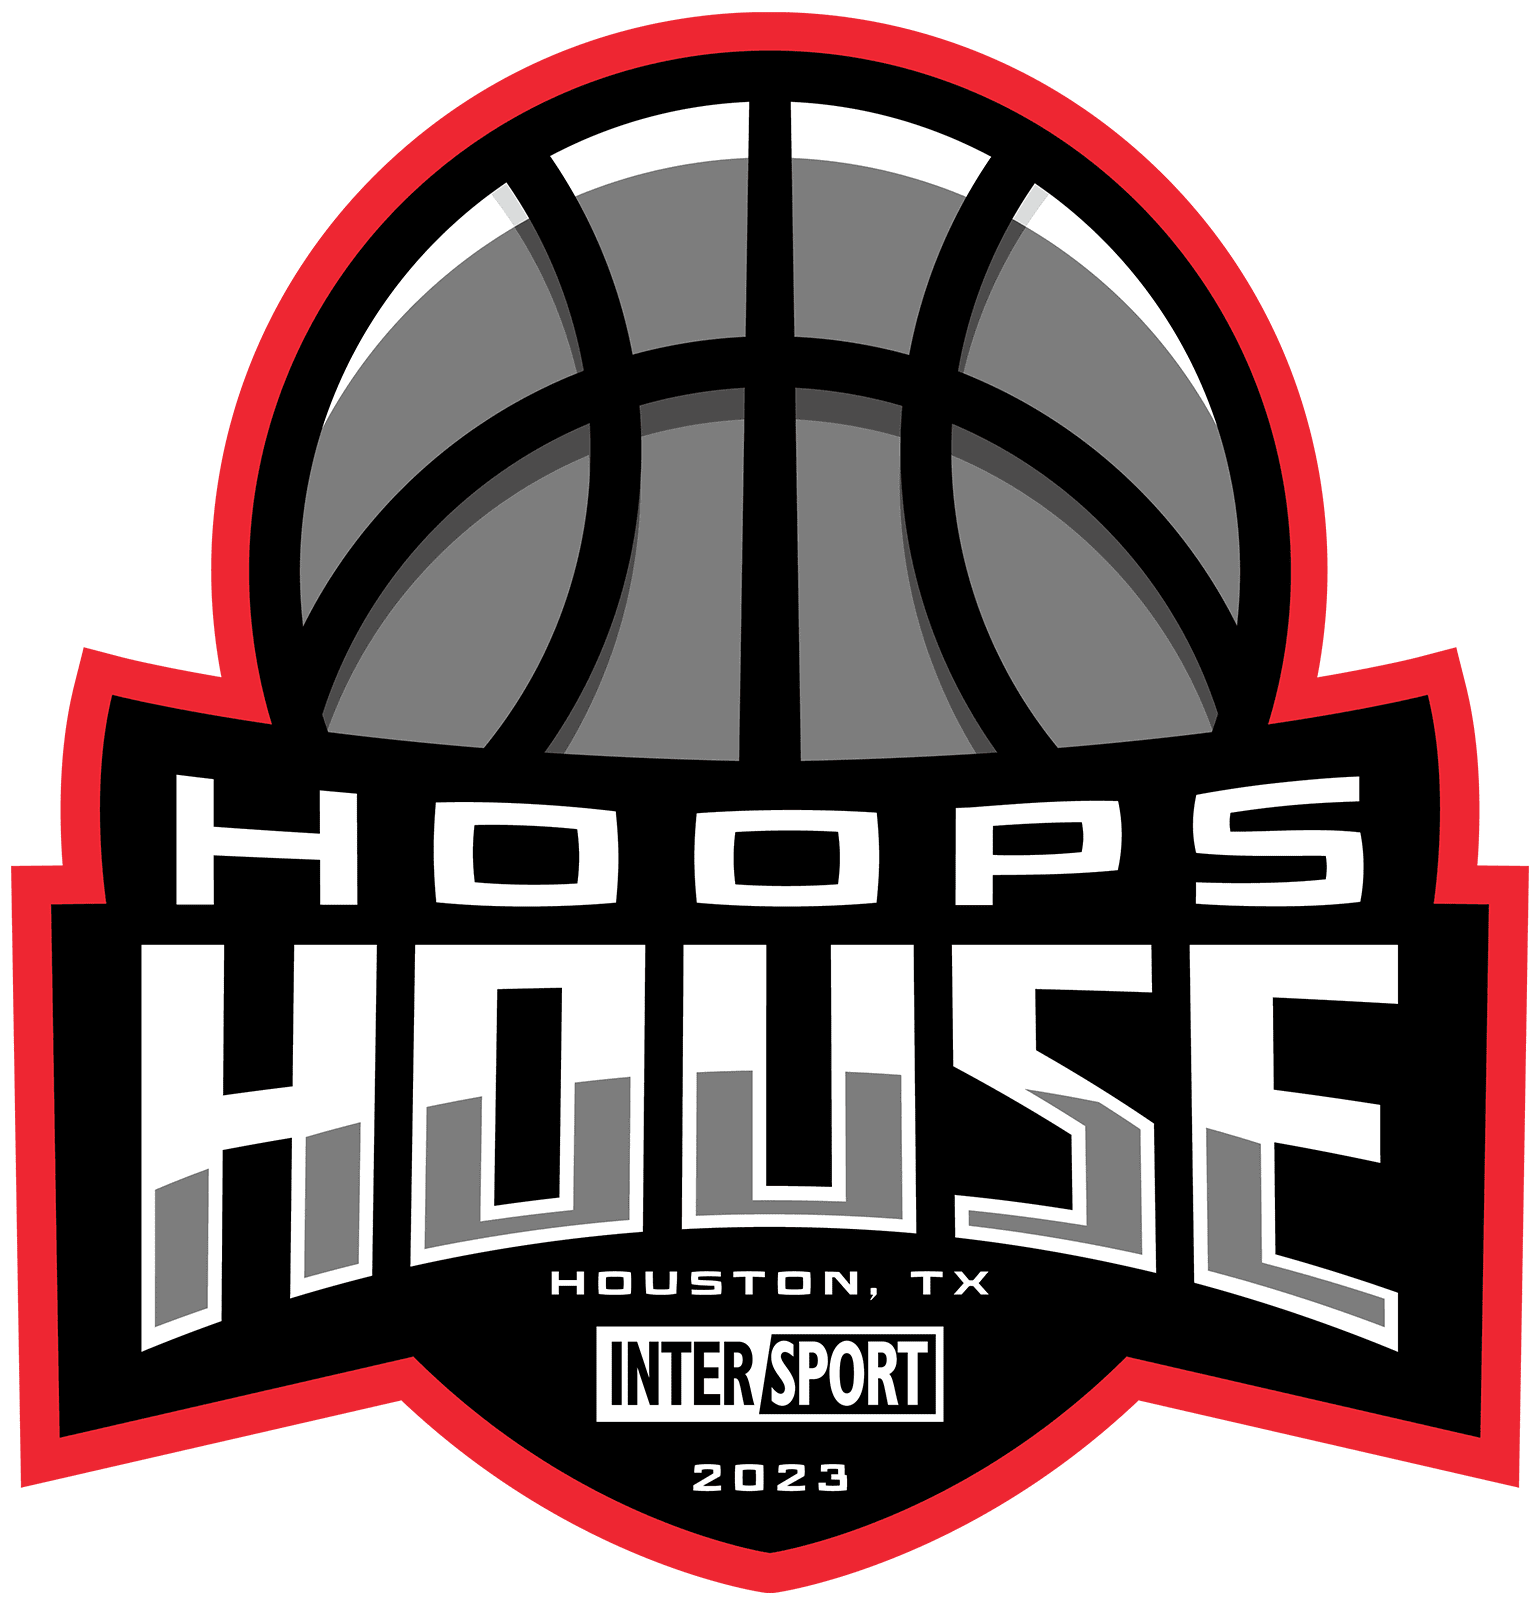 Houston Hoops House